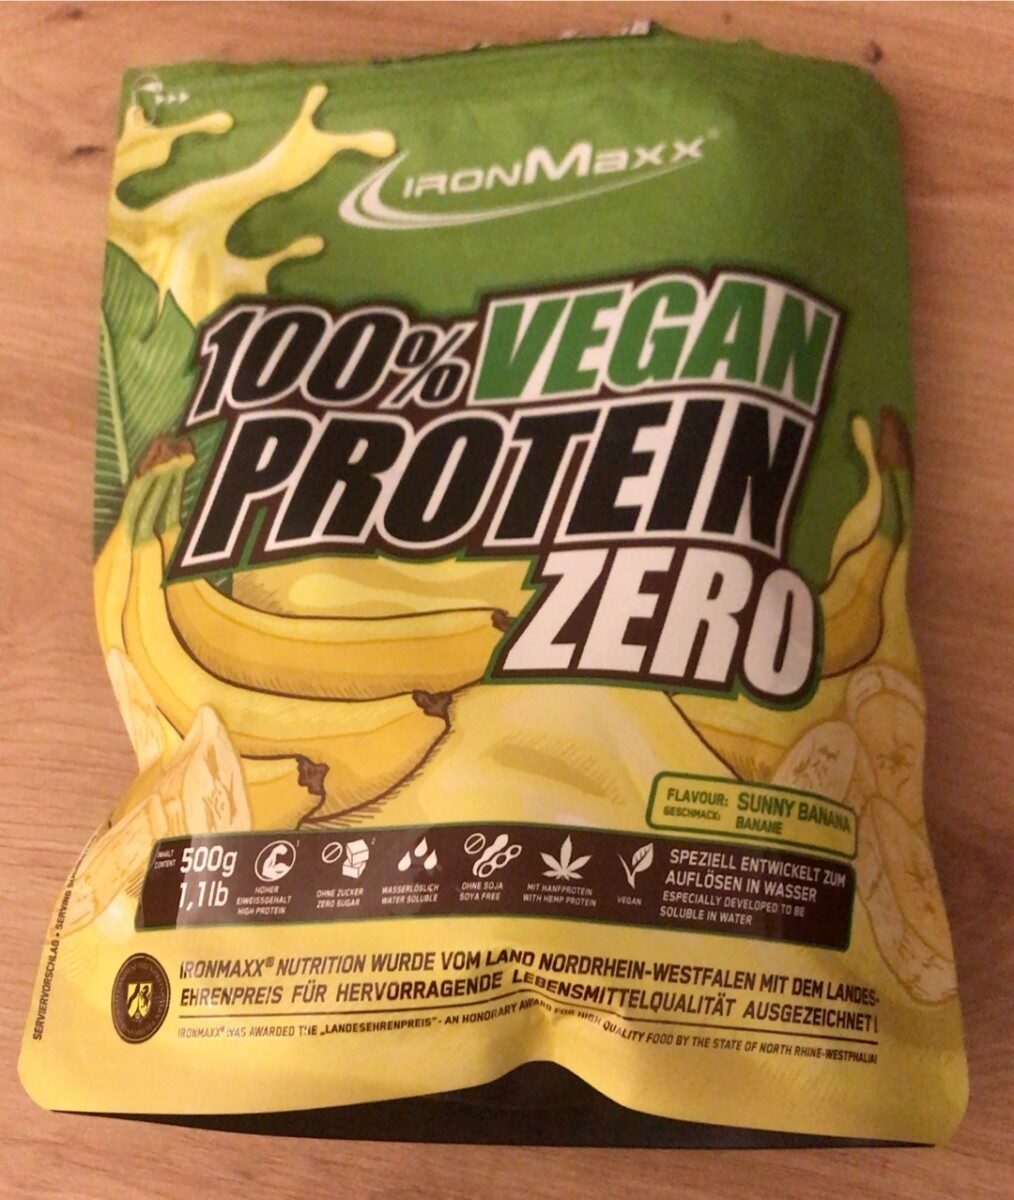 100% vegan protein zero - Prodotto - fr